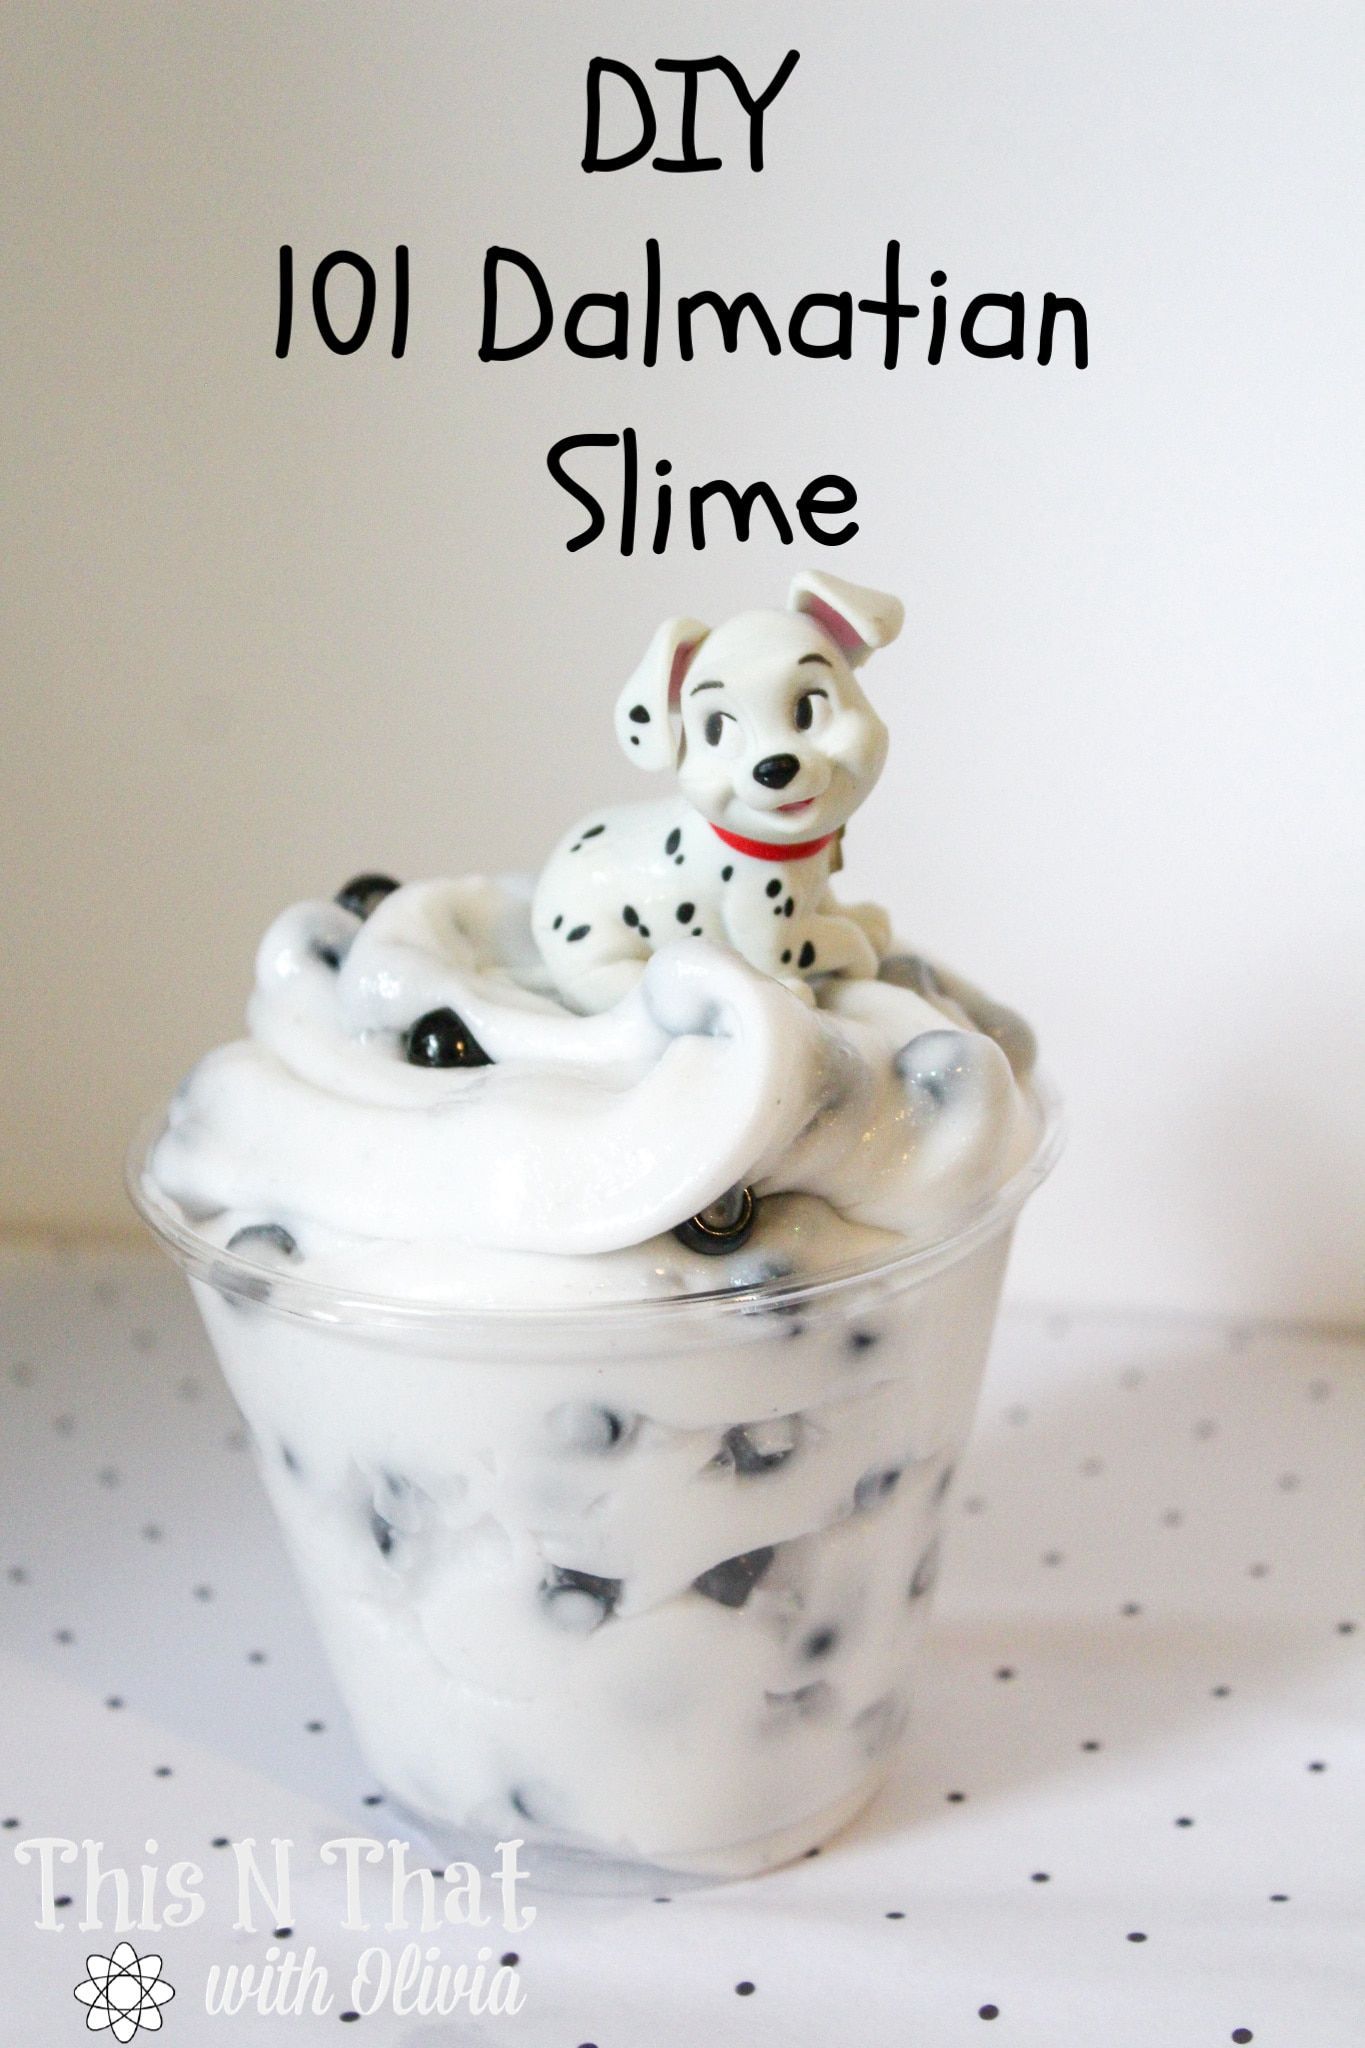 DIY 101 Dalmatian Slime Tutorial - DIY 101 Dalmatian Slime Tutorial -   19 diy Slime tutorial ideas